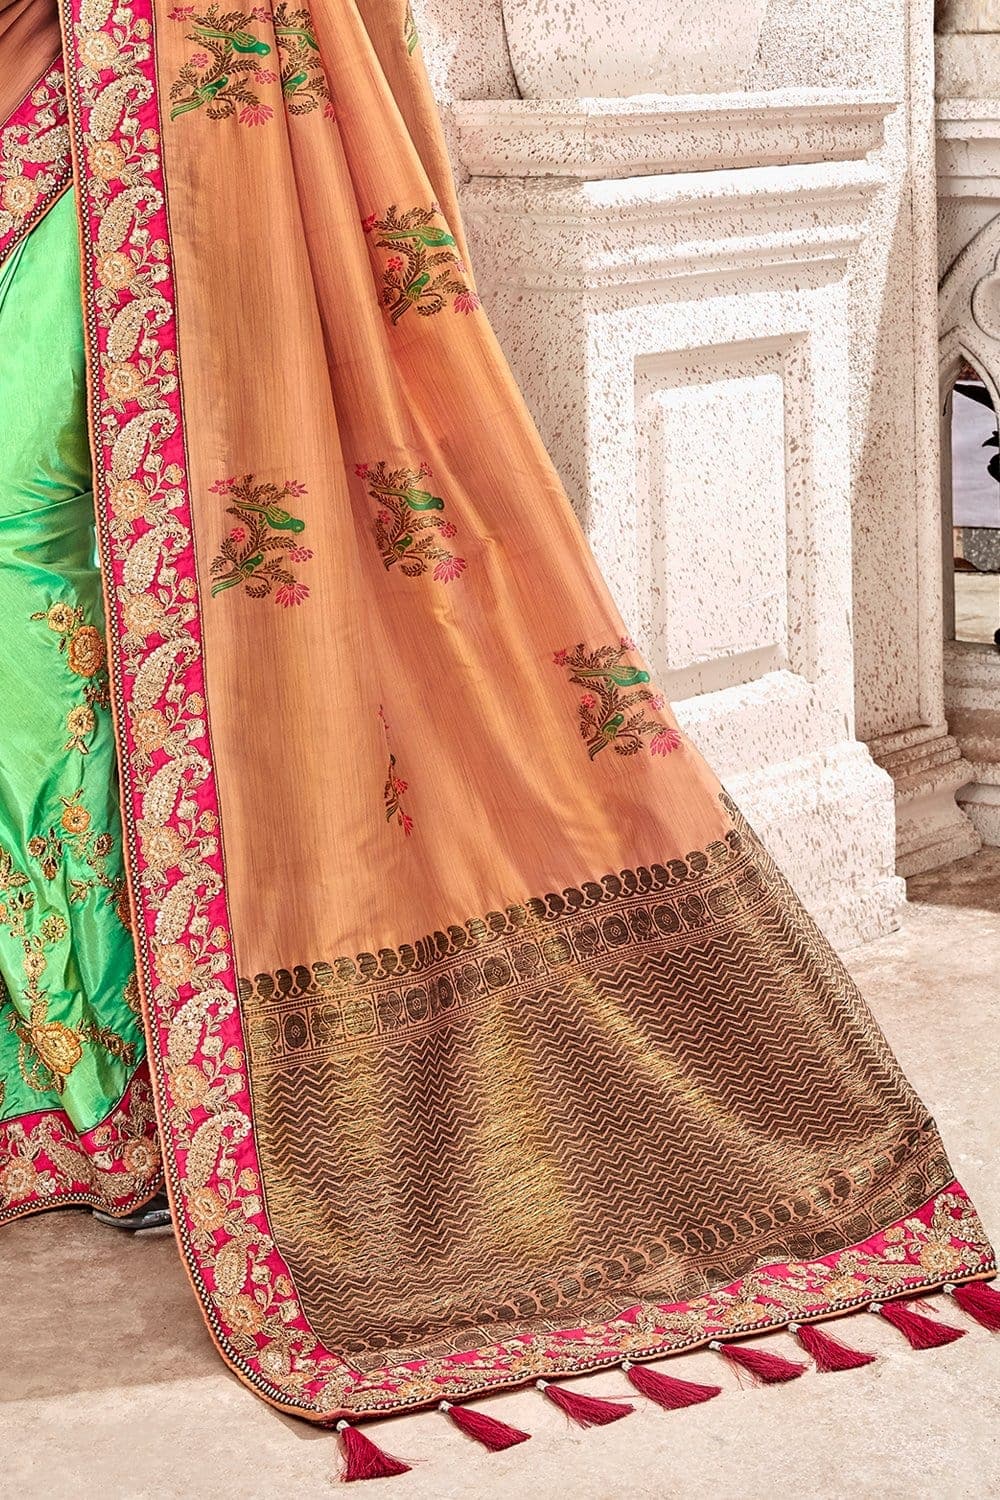 Buy Orange,green banarasi saree online at best price - Karagiri